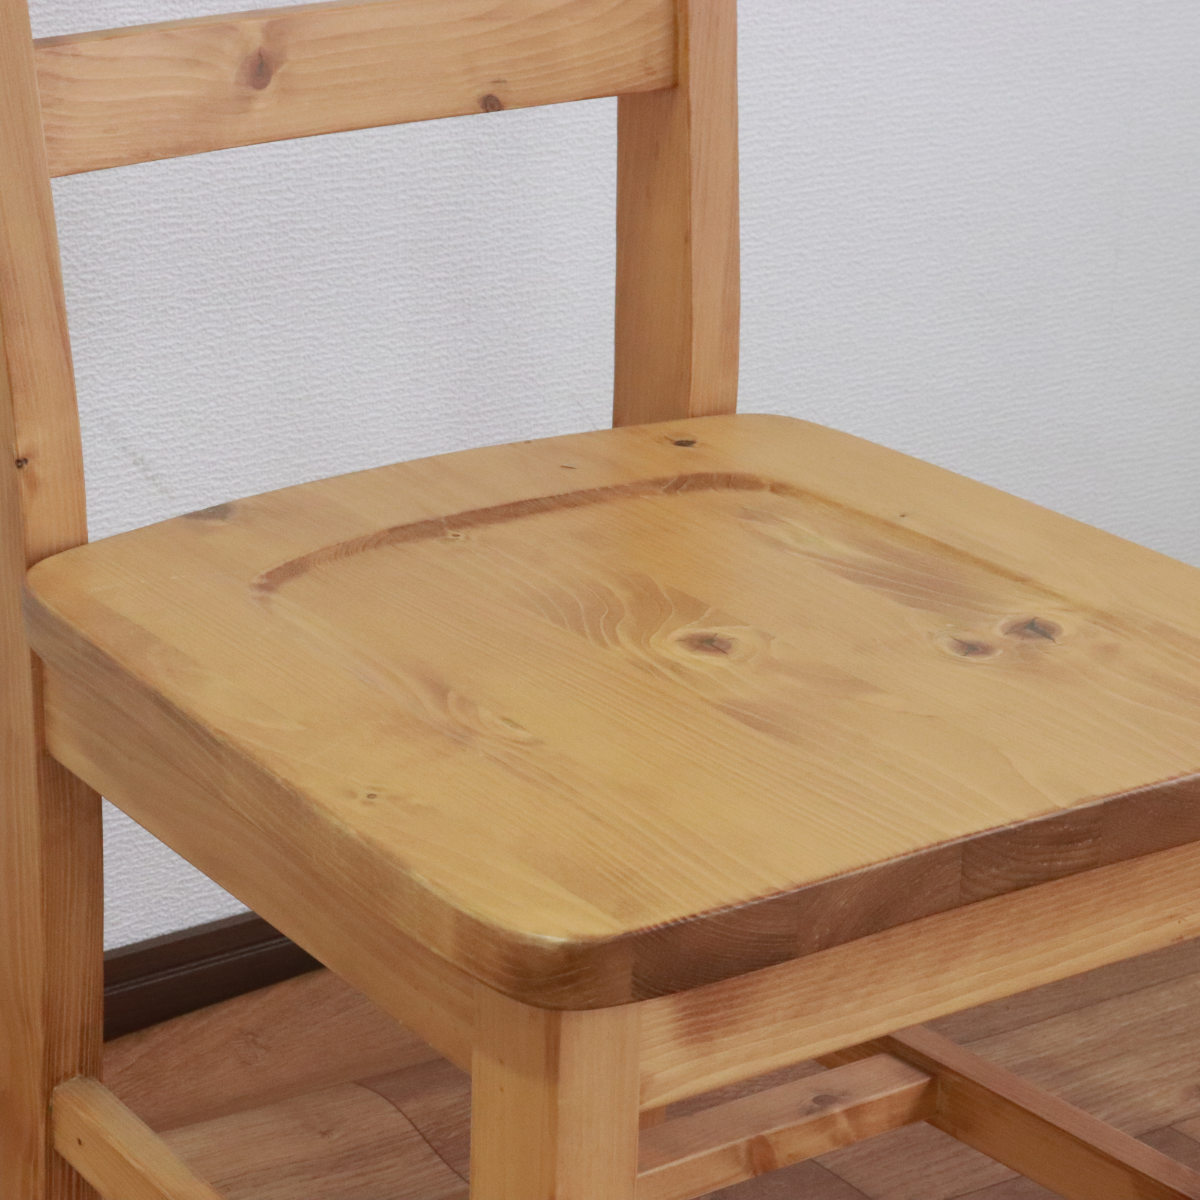 ダイニングチェア 天然木 カントリー調 座面高43cm （ 無垢 北欧 パイン材 木目 木製 チェア 椅子 いす 単品 完成品 ダイニング リビング  デスクチェア ナチュラル ）